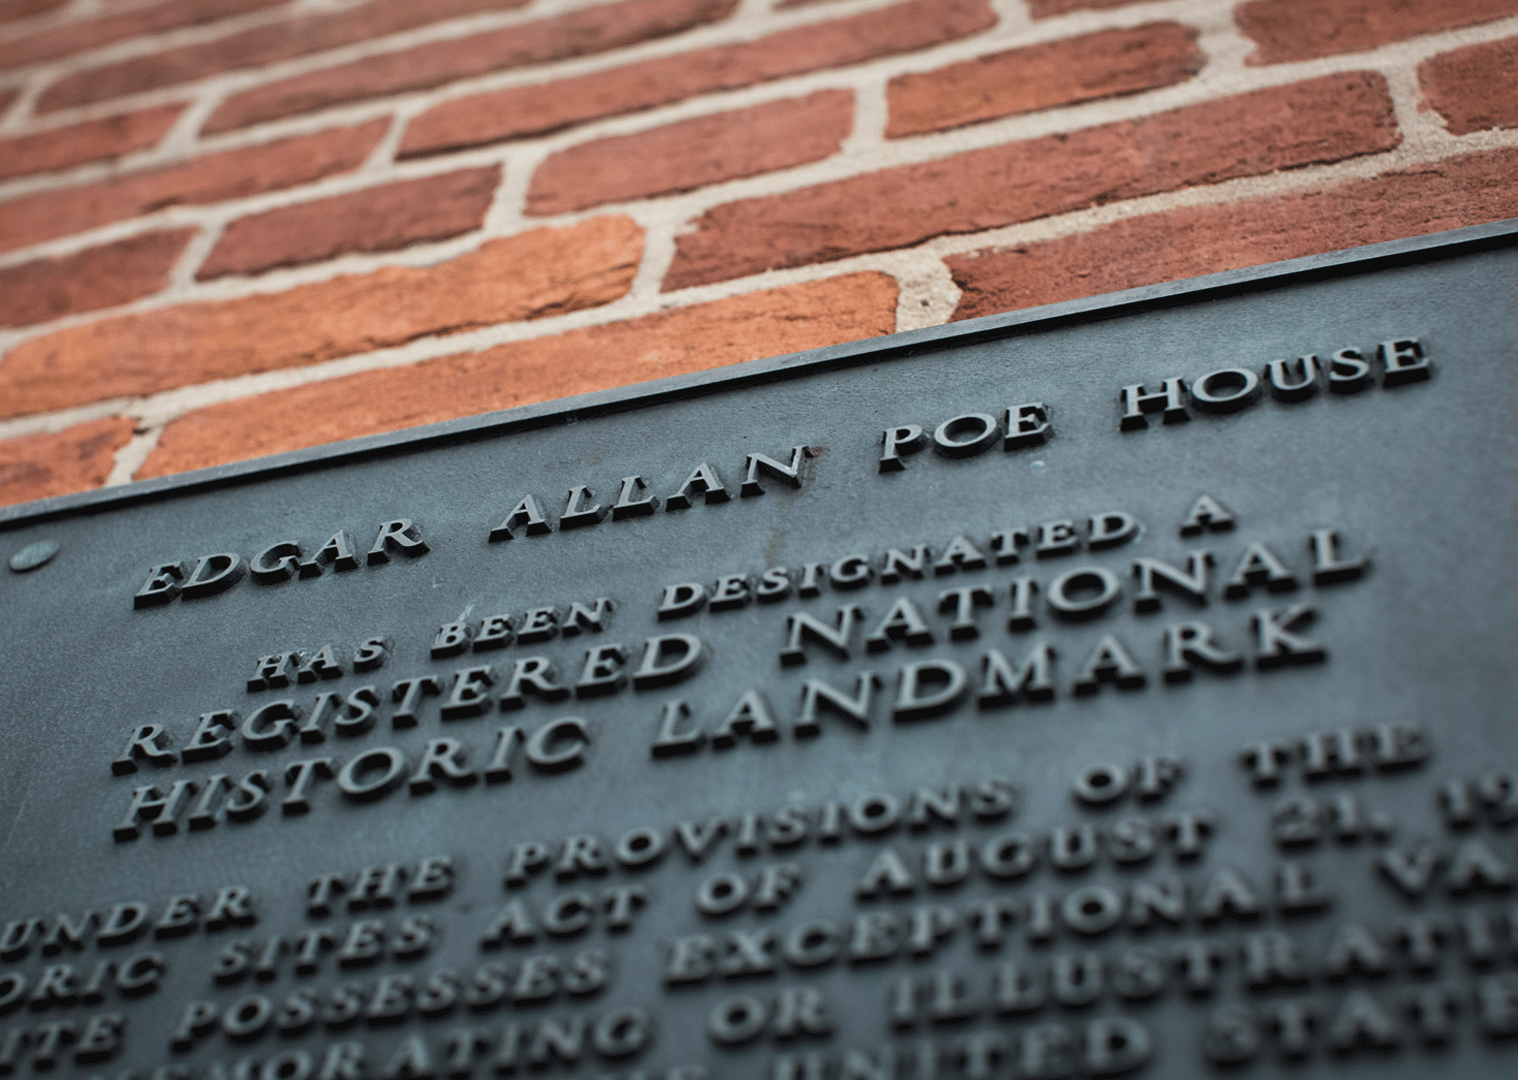 Explore Edgar Allan Poe's Baltimore Legacy